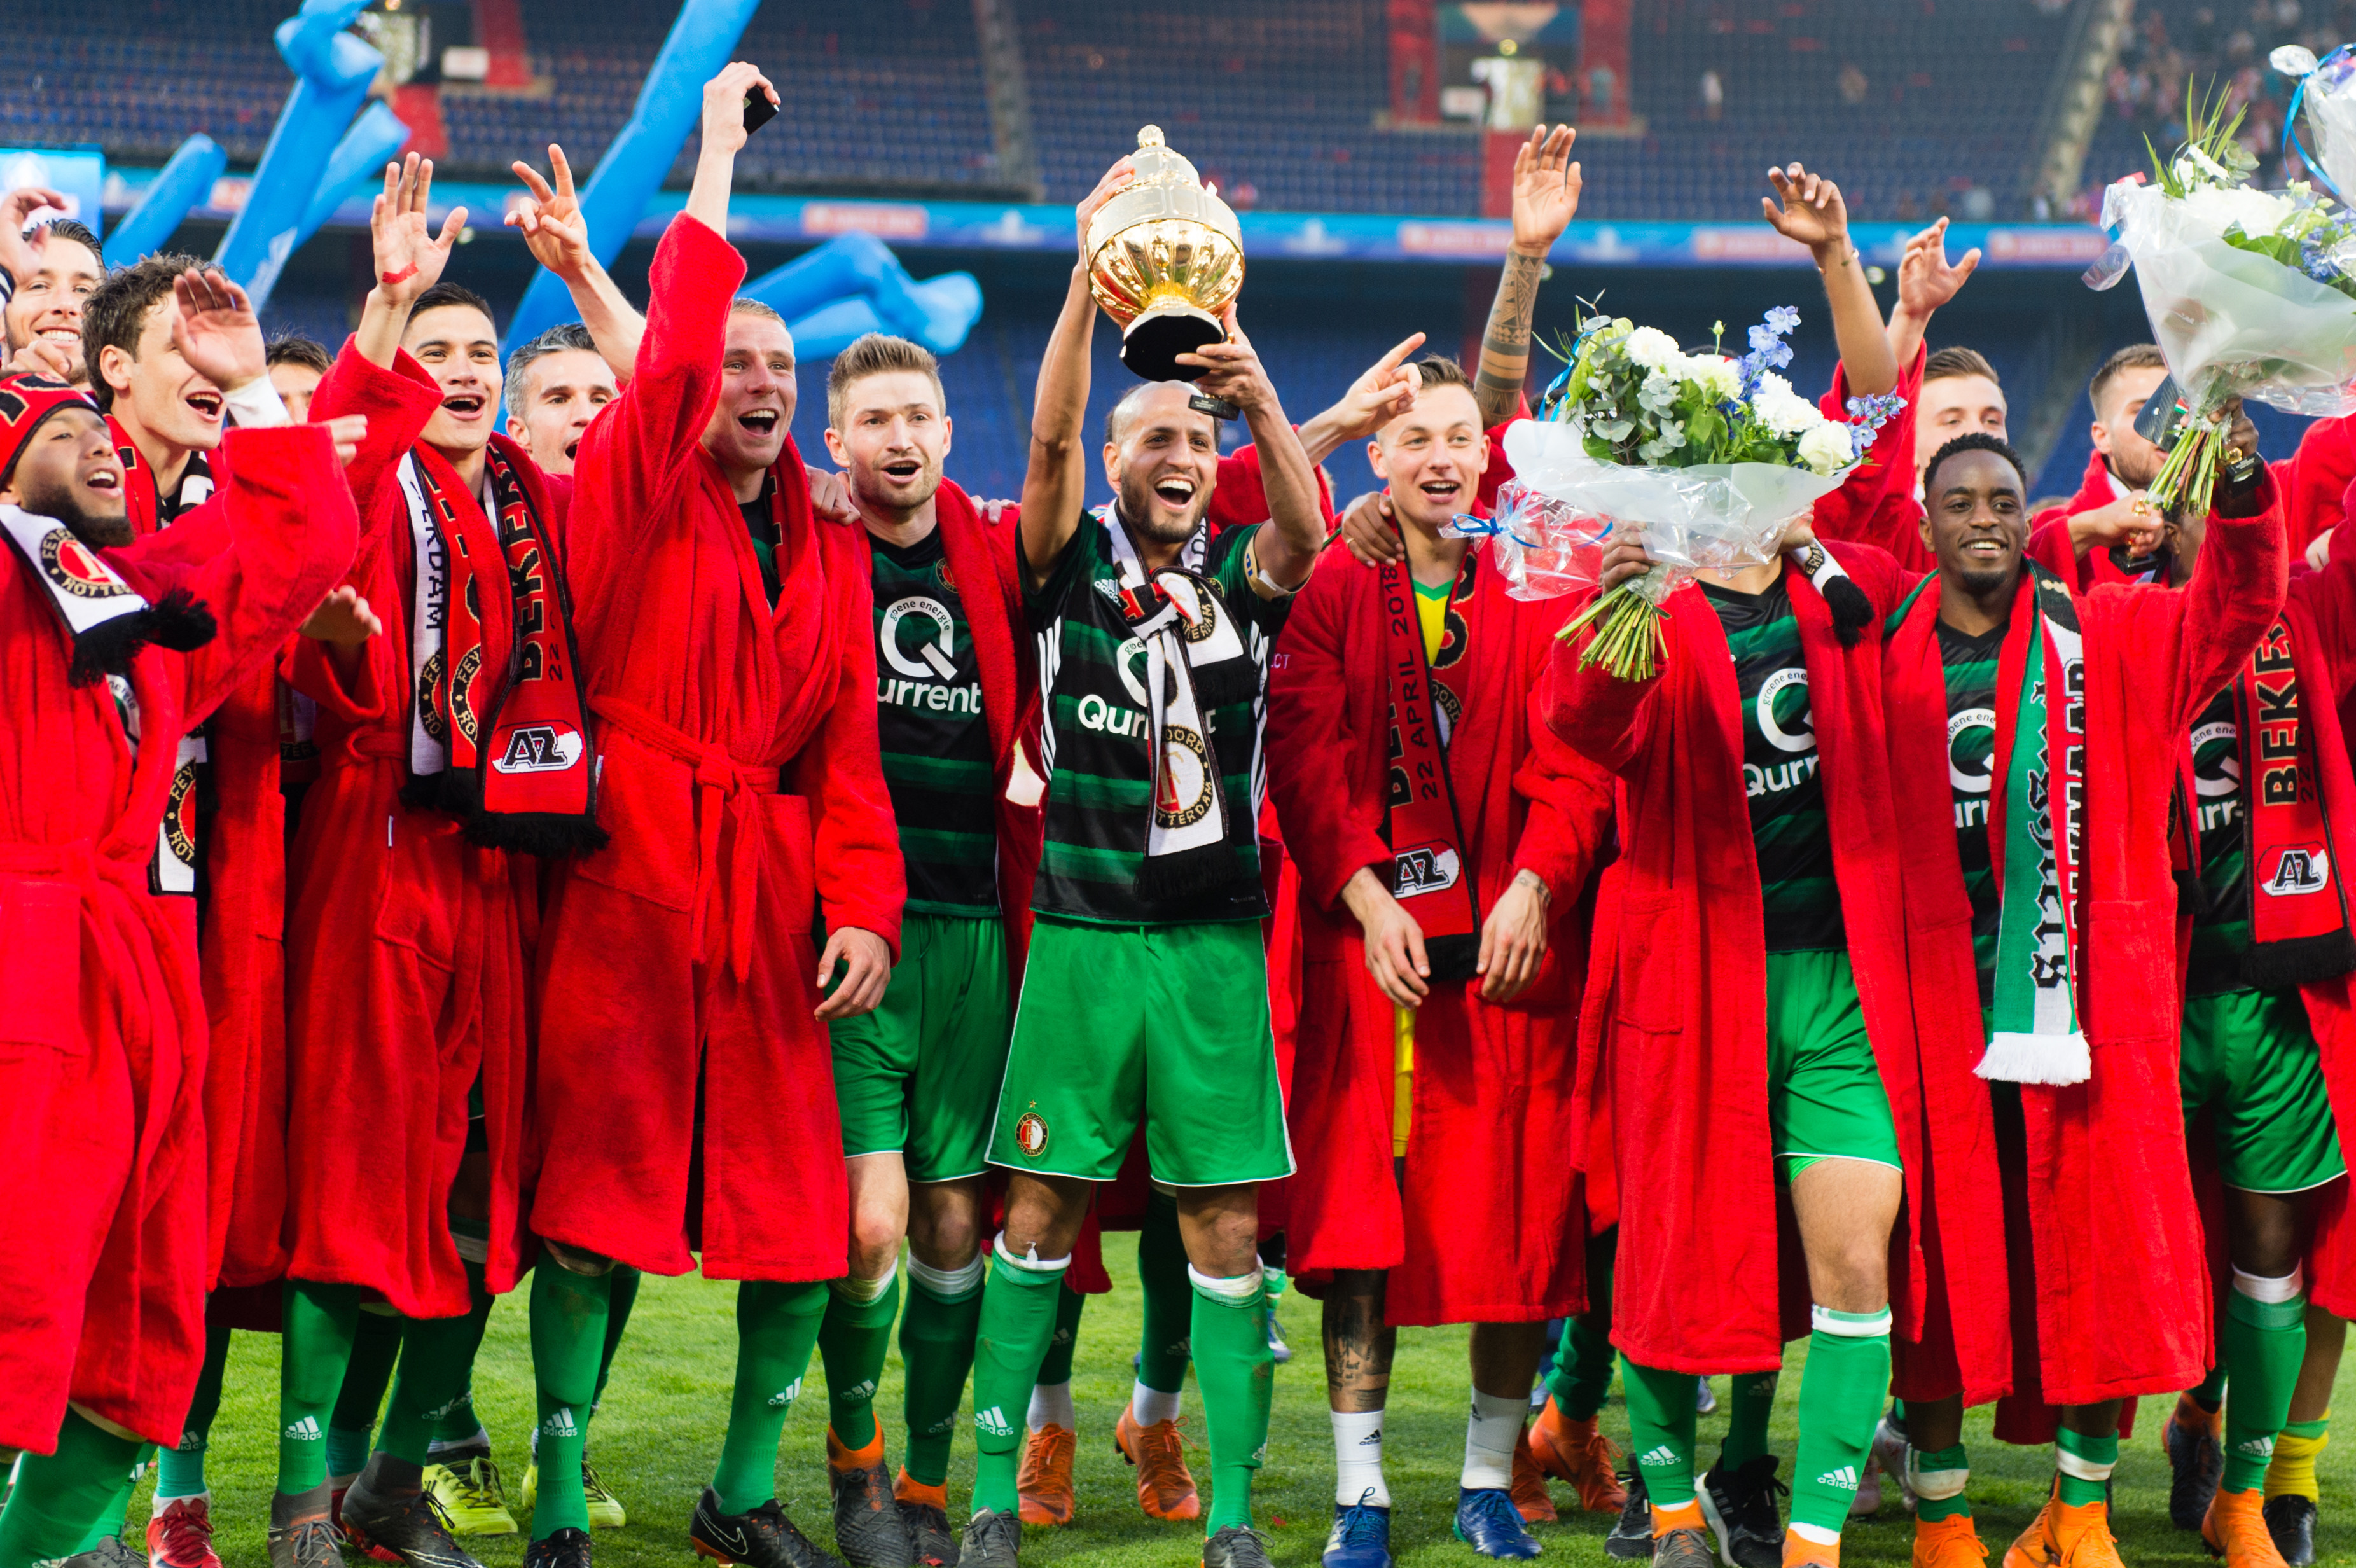 Bekerfinale tussen Feyenoord en N.E.C. uitverkocht